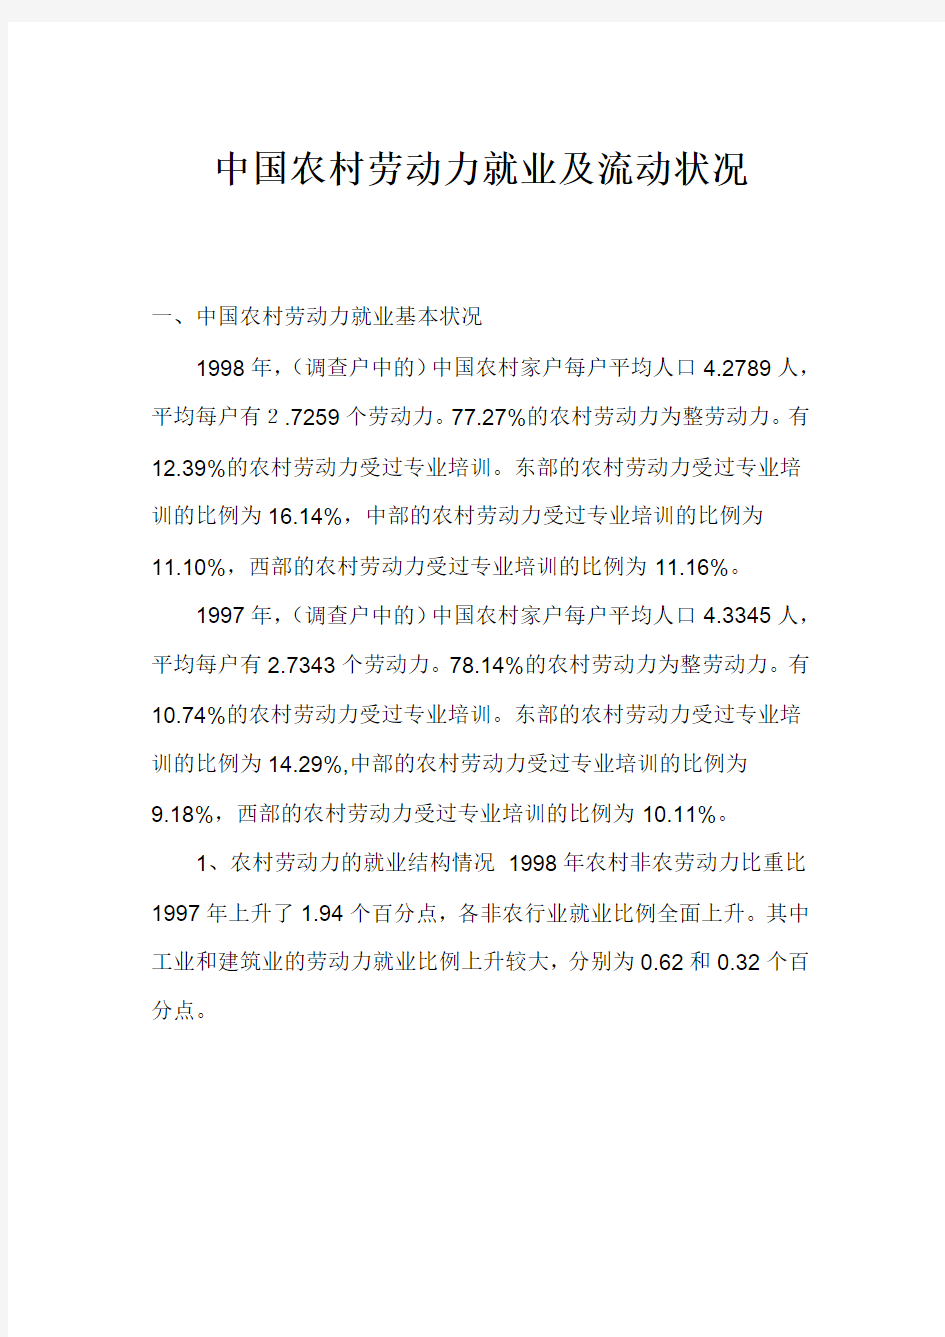 中国农村劳动力就业及流动状况